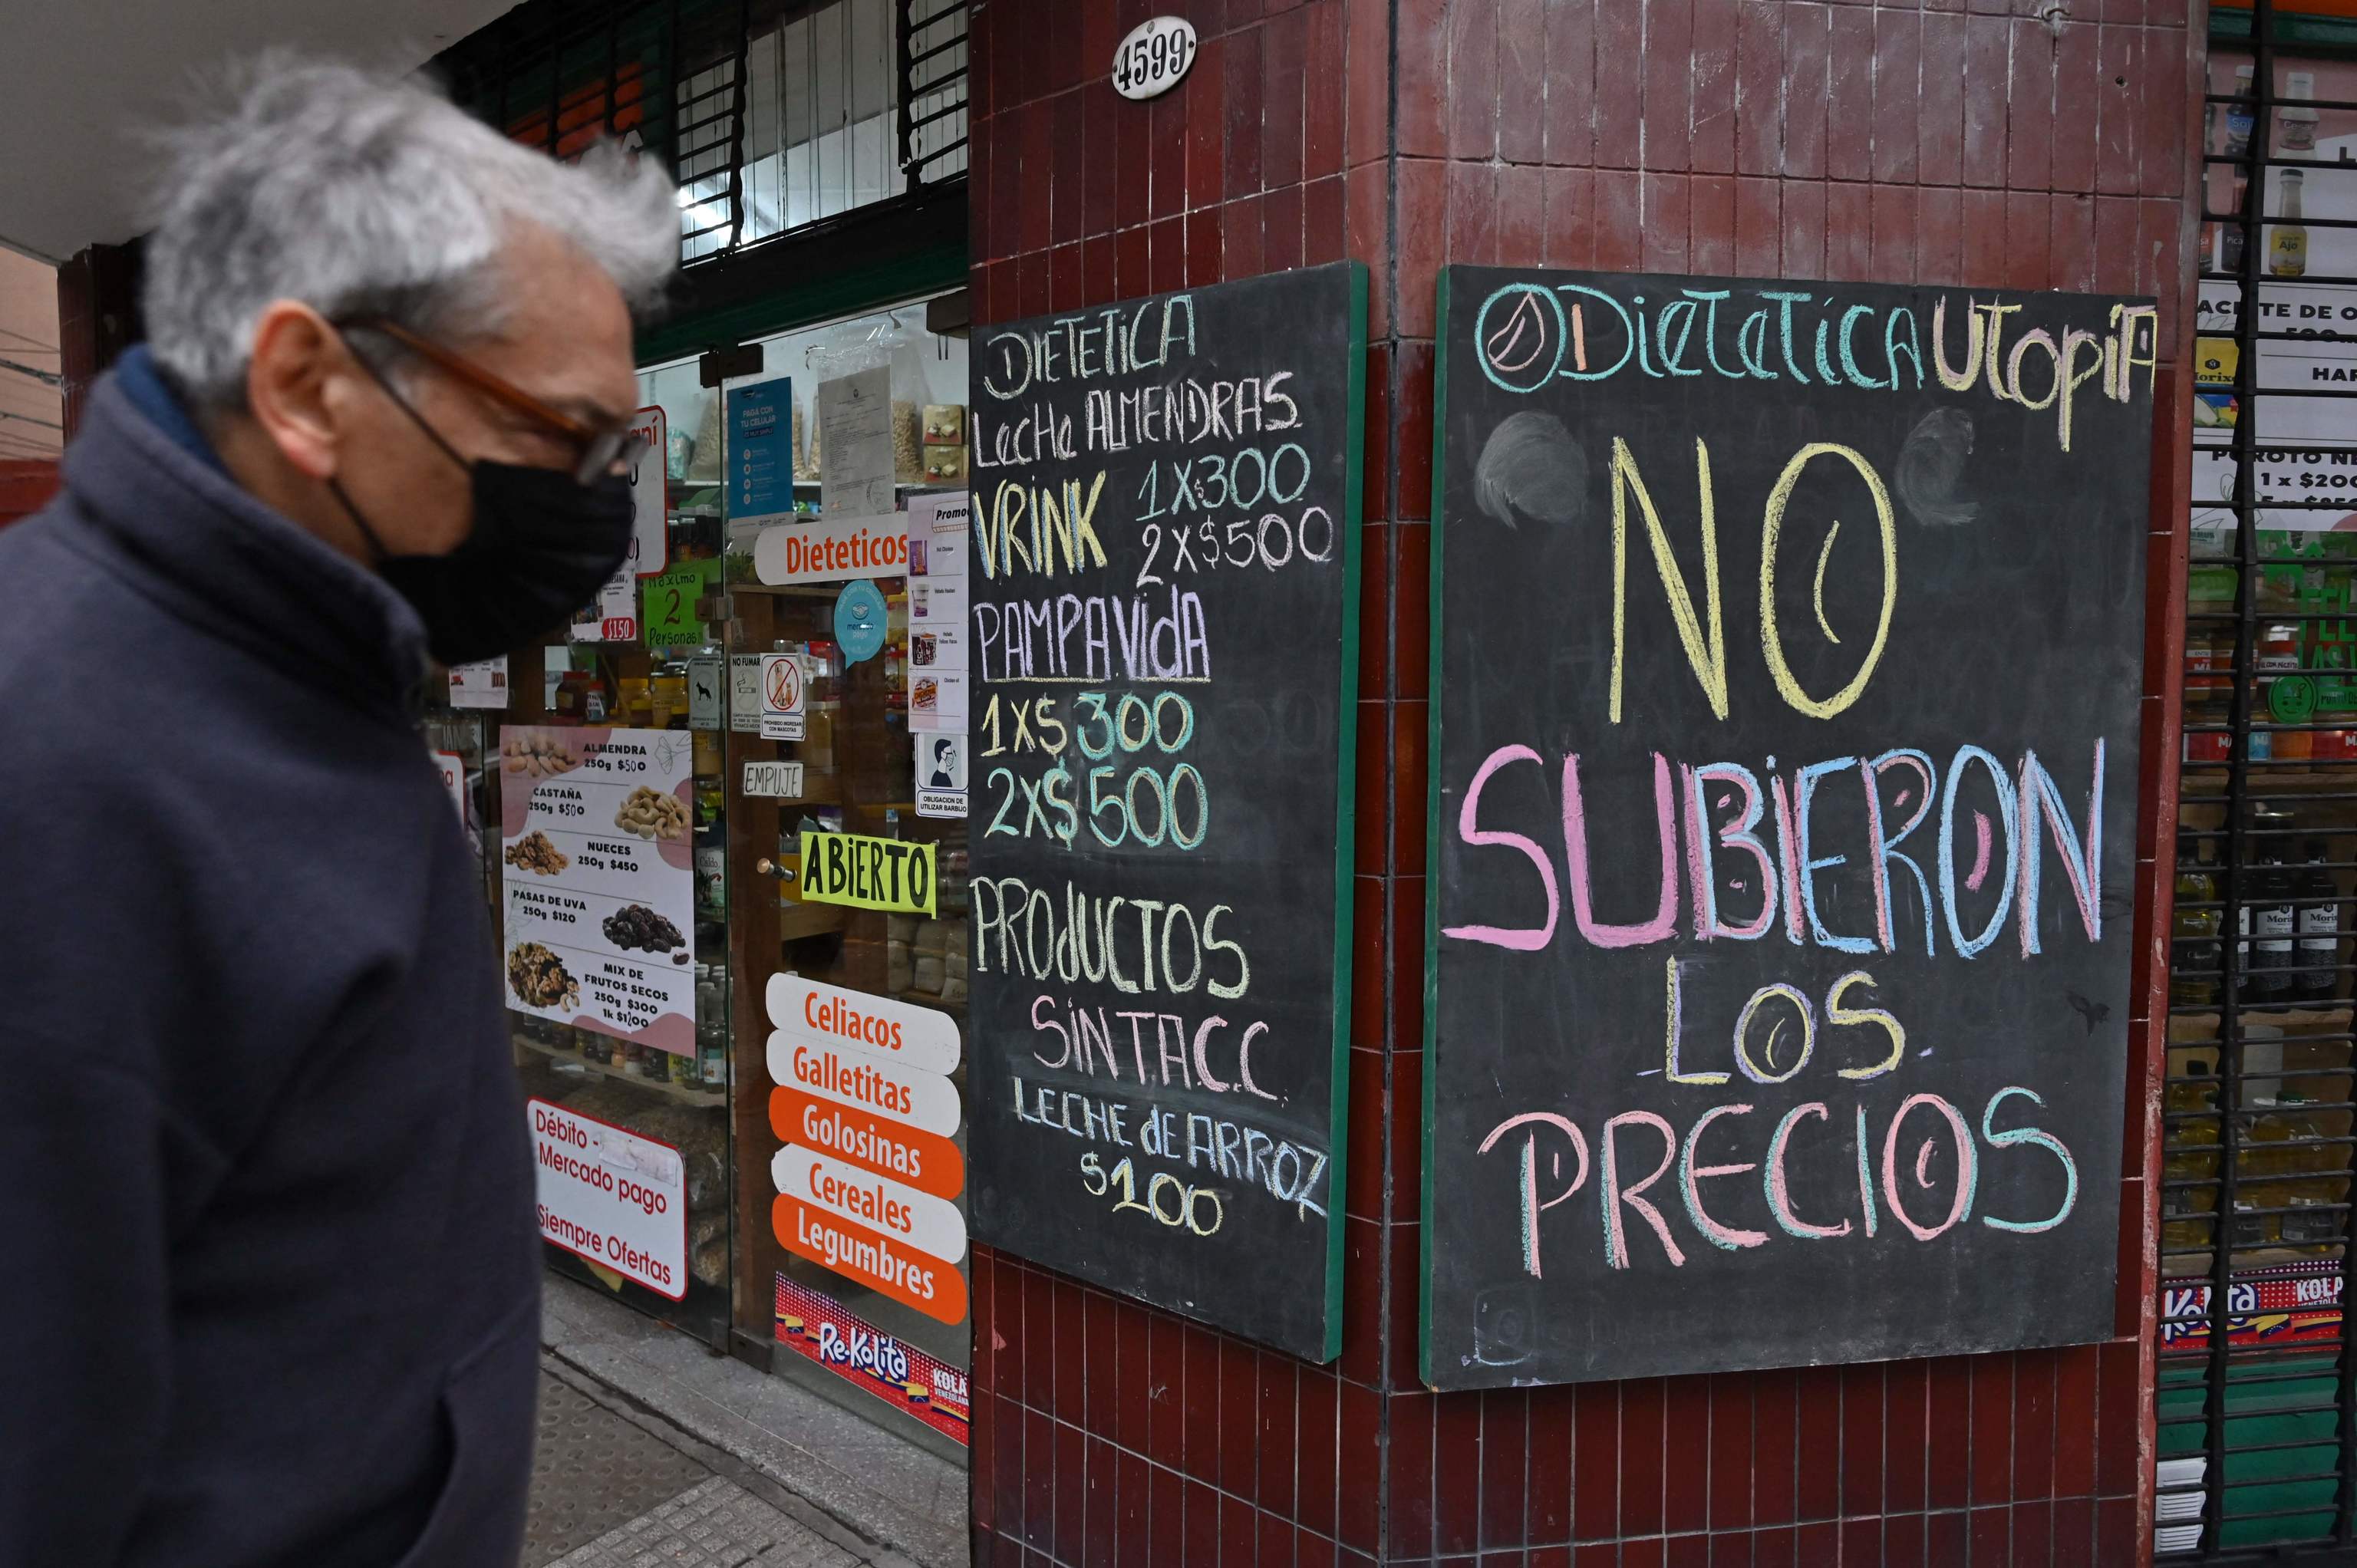 Un hombre pasa junto a una pancarta en la que se lee "Los precios no subieron" frente a una tienda en Buenos Aires, Argentina, el 6 de julio de 2022.